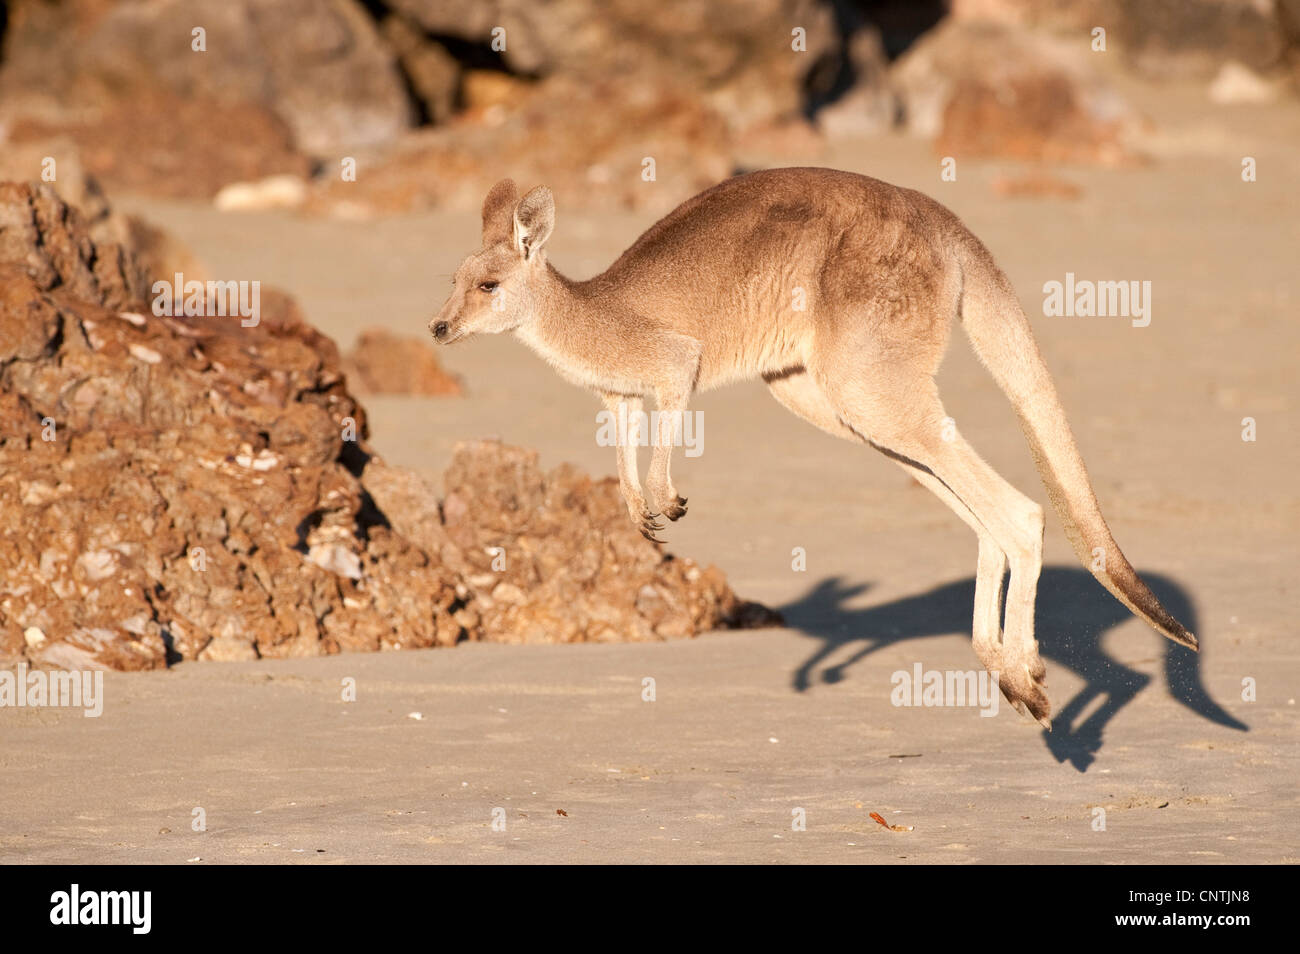 agile wallaby, sandy wallaby (Macropus agilis, Wallabia agilis), jumps on the beach, Australia, Queensland, Cape Hillsborough Stock Photo